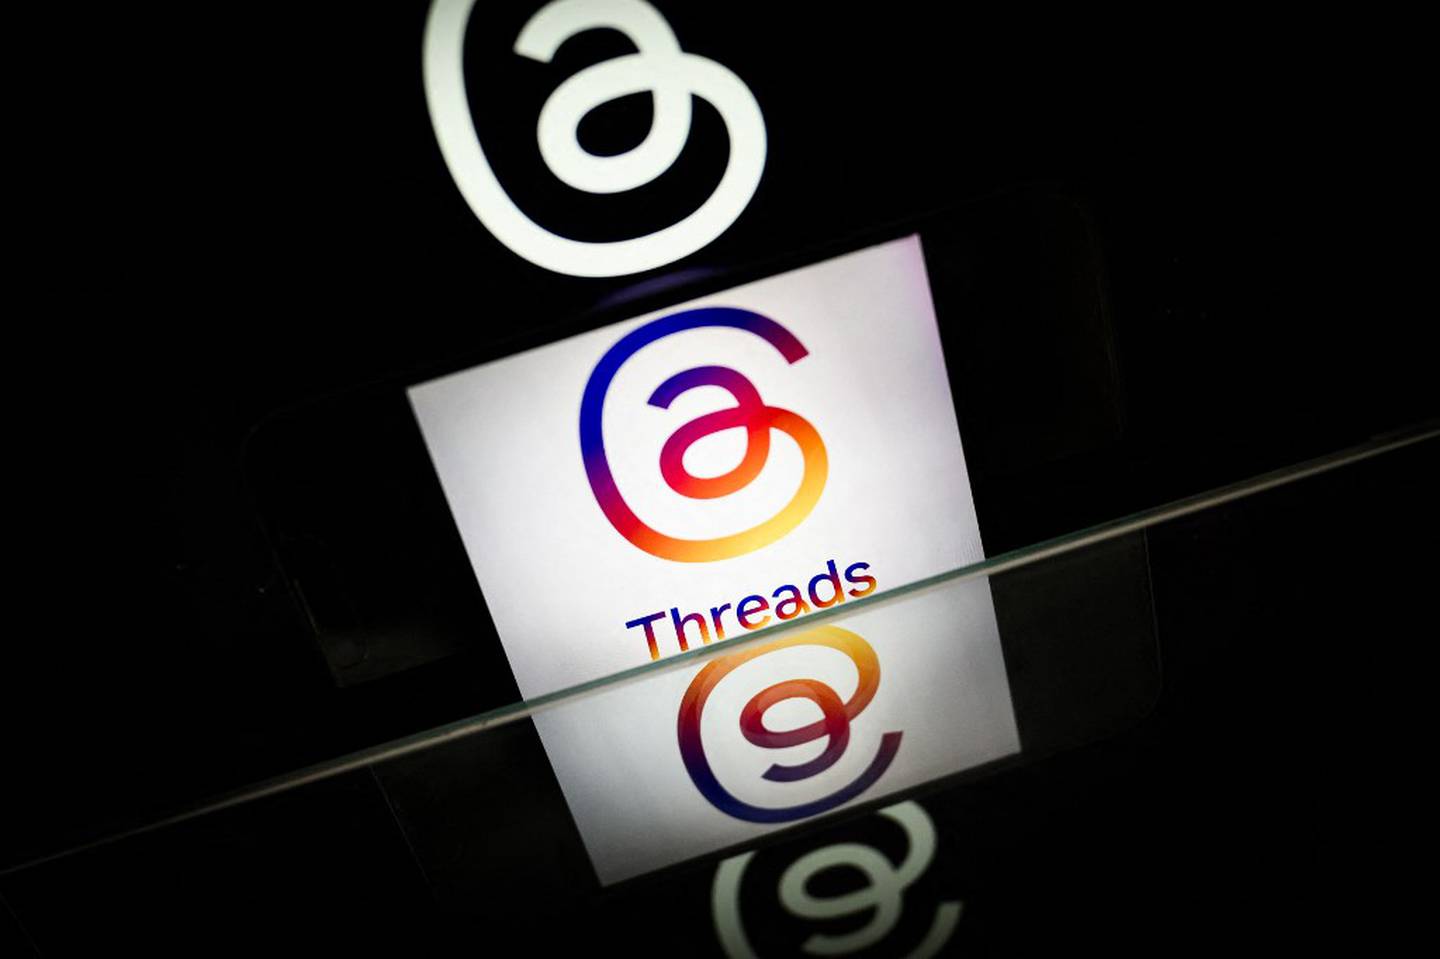 Threads alcanzó 175 millones de usuarios en un año, superando récords de descargas.